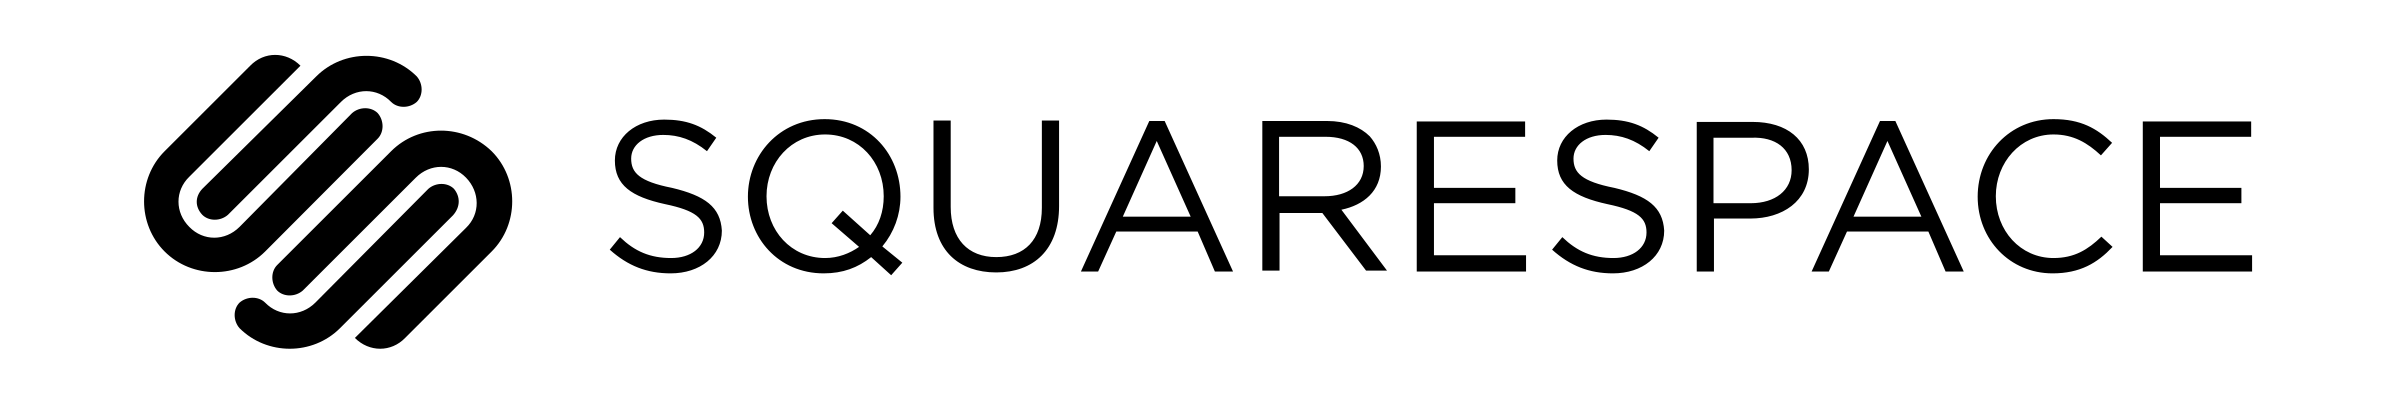 Squarespace Logo - Squarespace Logo Transparent. This Week In Startups